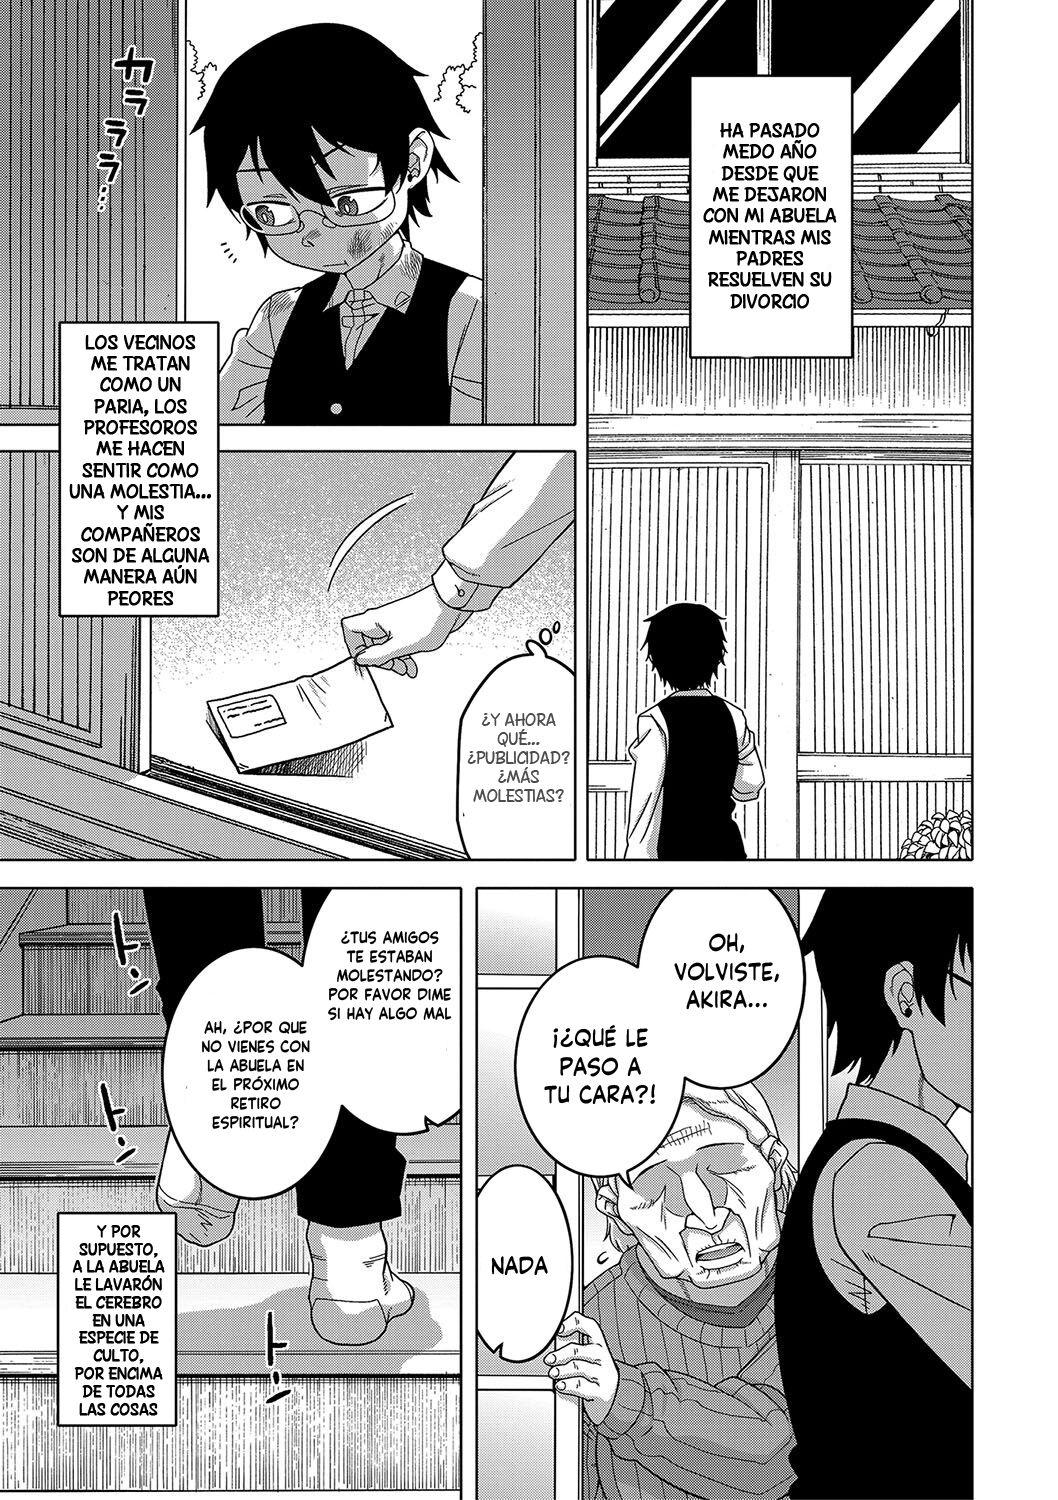 Manga KAMI-SAMA NO TSUKURIKATA-THE MAKING OF A CULT LEADER Chapter 1 image number 34